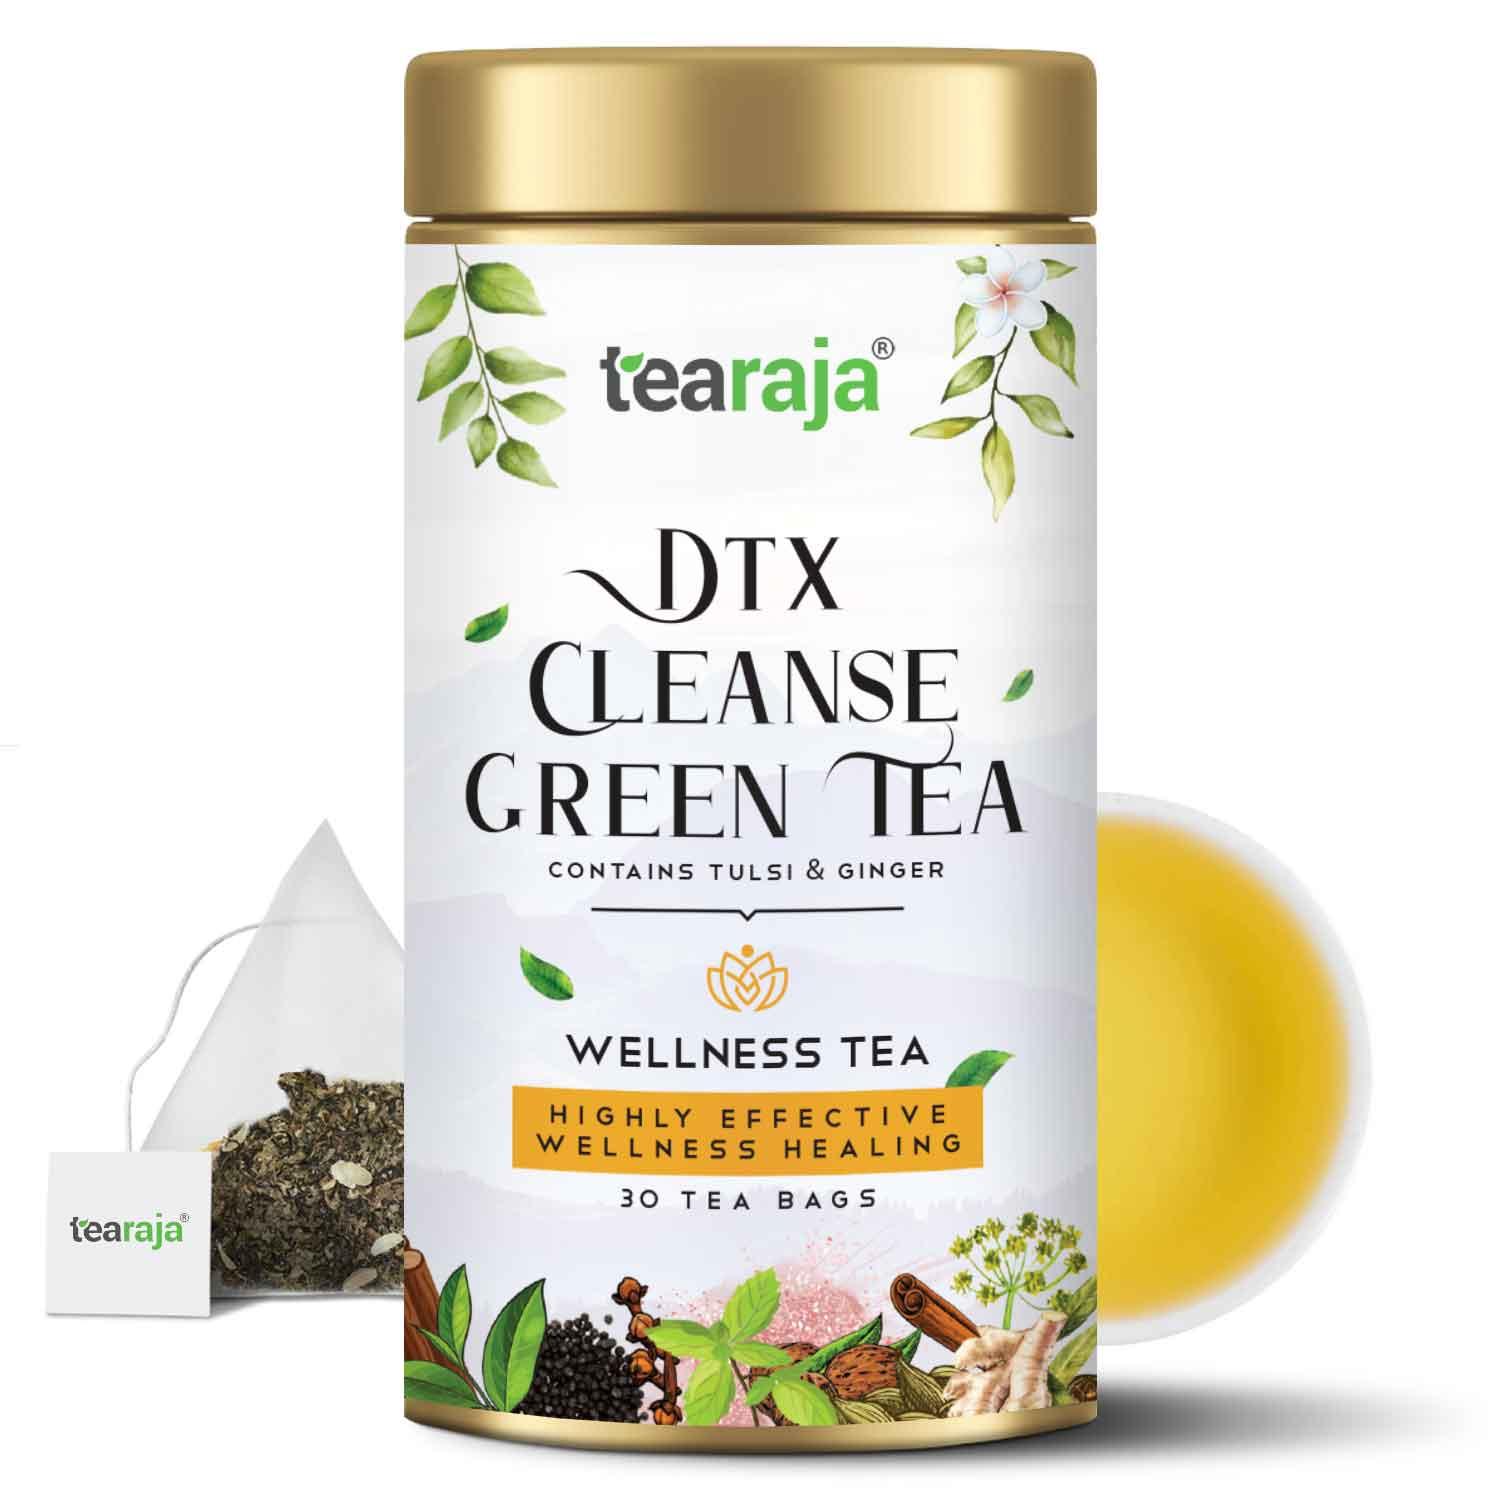 Dtx Cleanse Green Tea 30 Tea Bags - Tearaja